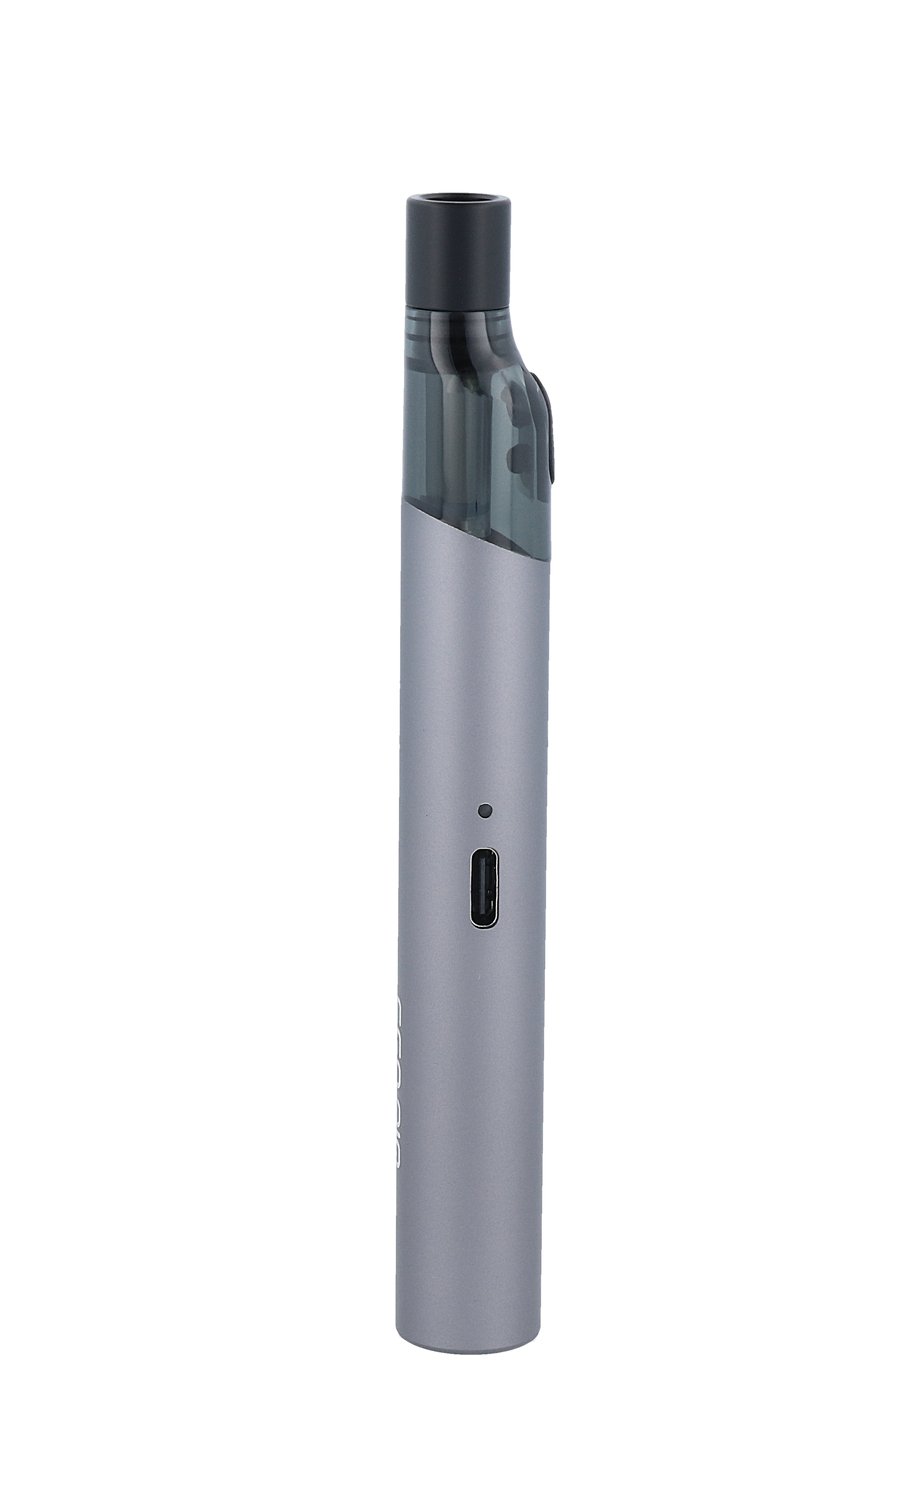 Joyetech - eGo Air - E-Zigaretten Set - schwarz 1er Packung - Vapes4you